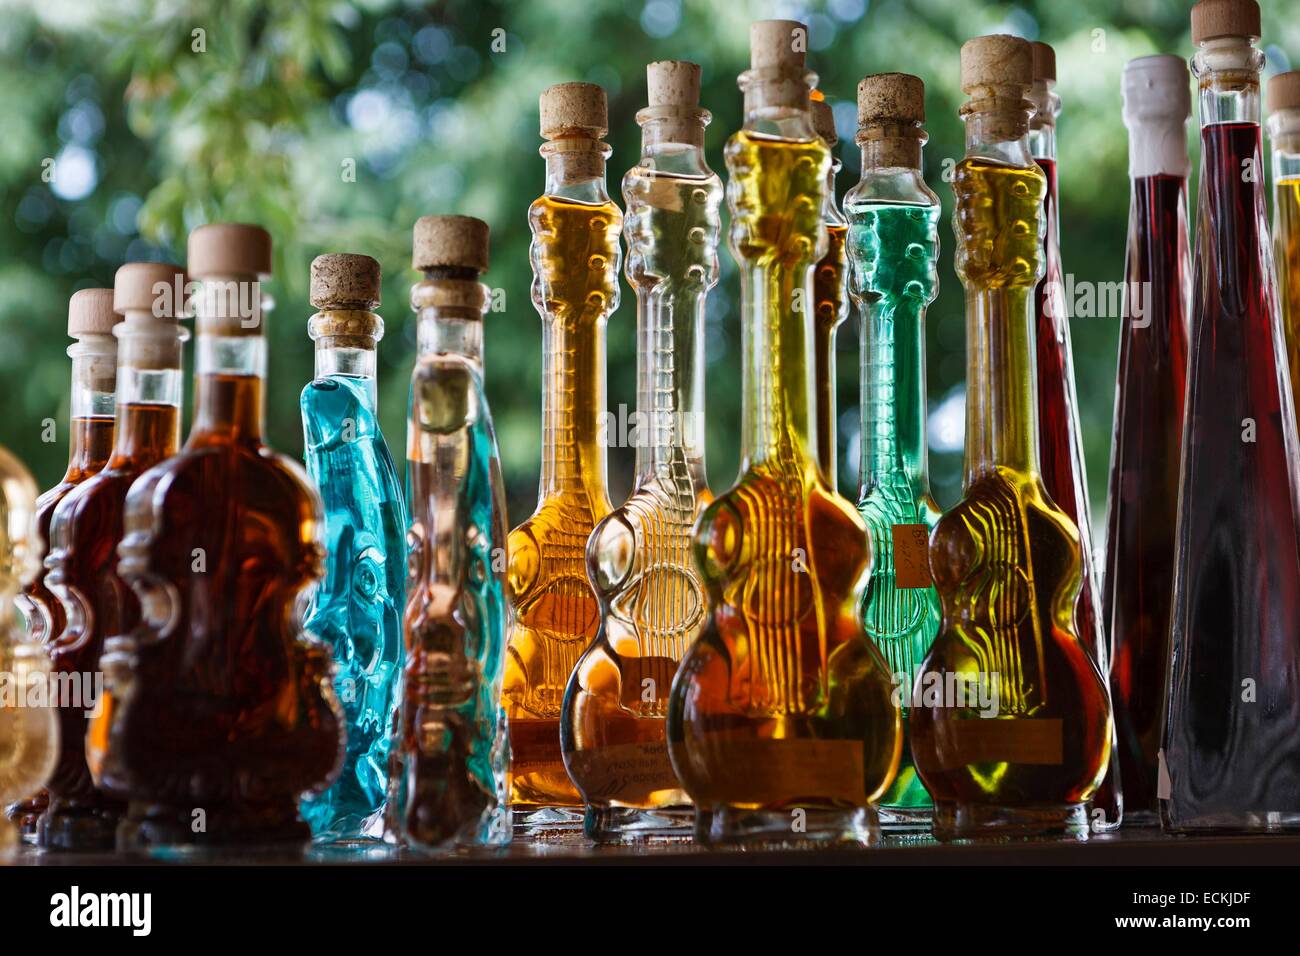 La Croatie, Peljesac, Ston, Mali Ston, détail de petites bouteilles de liqueurs traditionnelles croates Banque D'Images